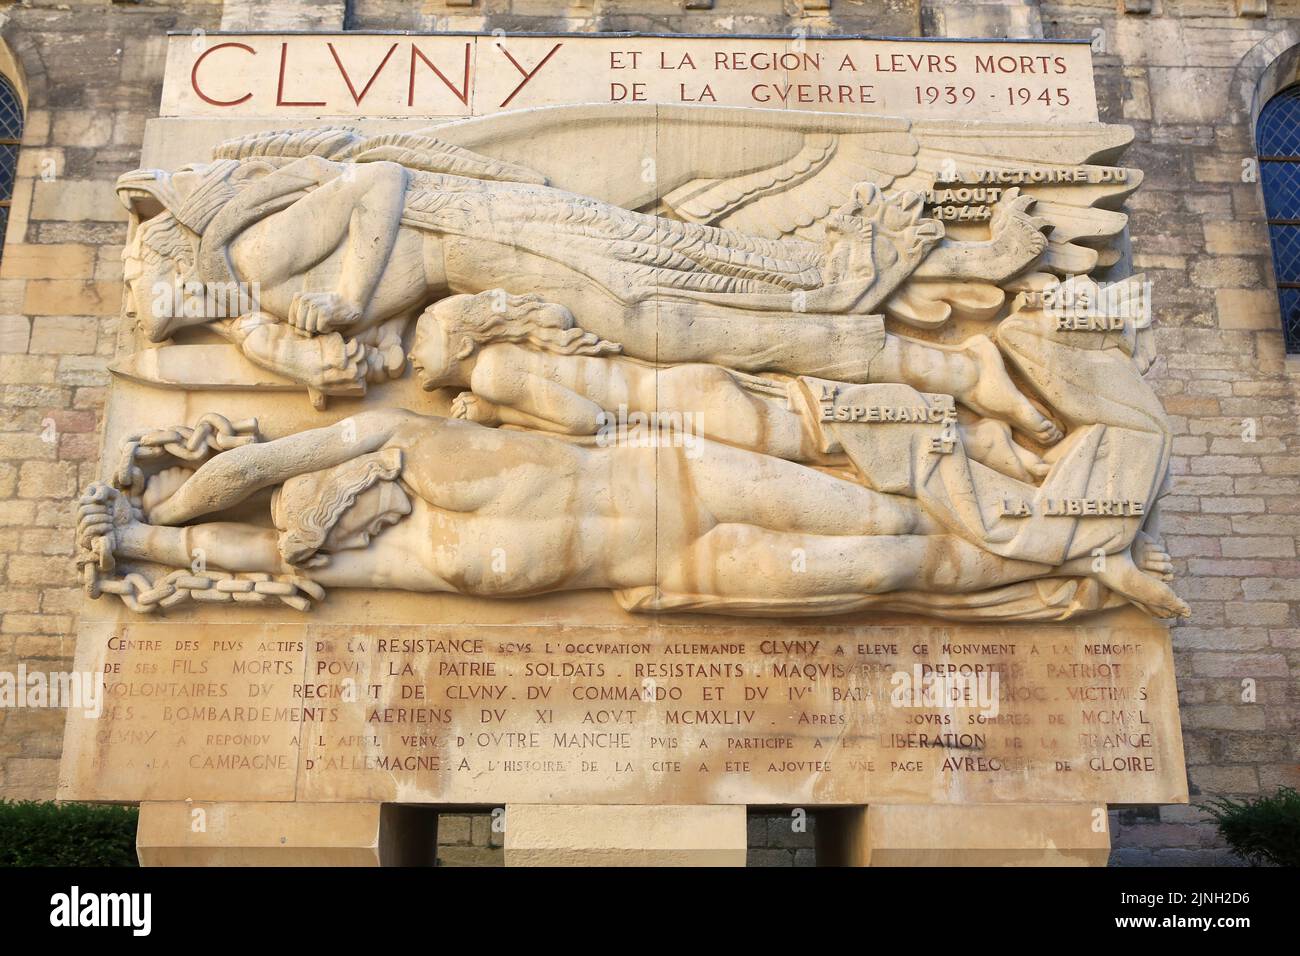 Victoire Ailée. Monument aux morts inauguré par le général Jean de Lattre-de-Tassigny, François Mitterrand et Charles Pleindoux le 16 août 1948. Secon Banque D'Images